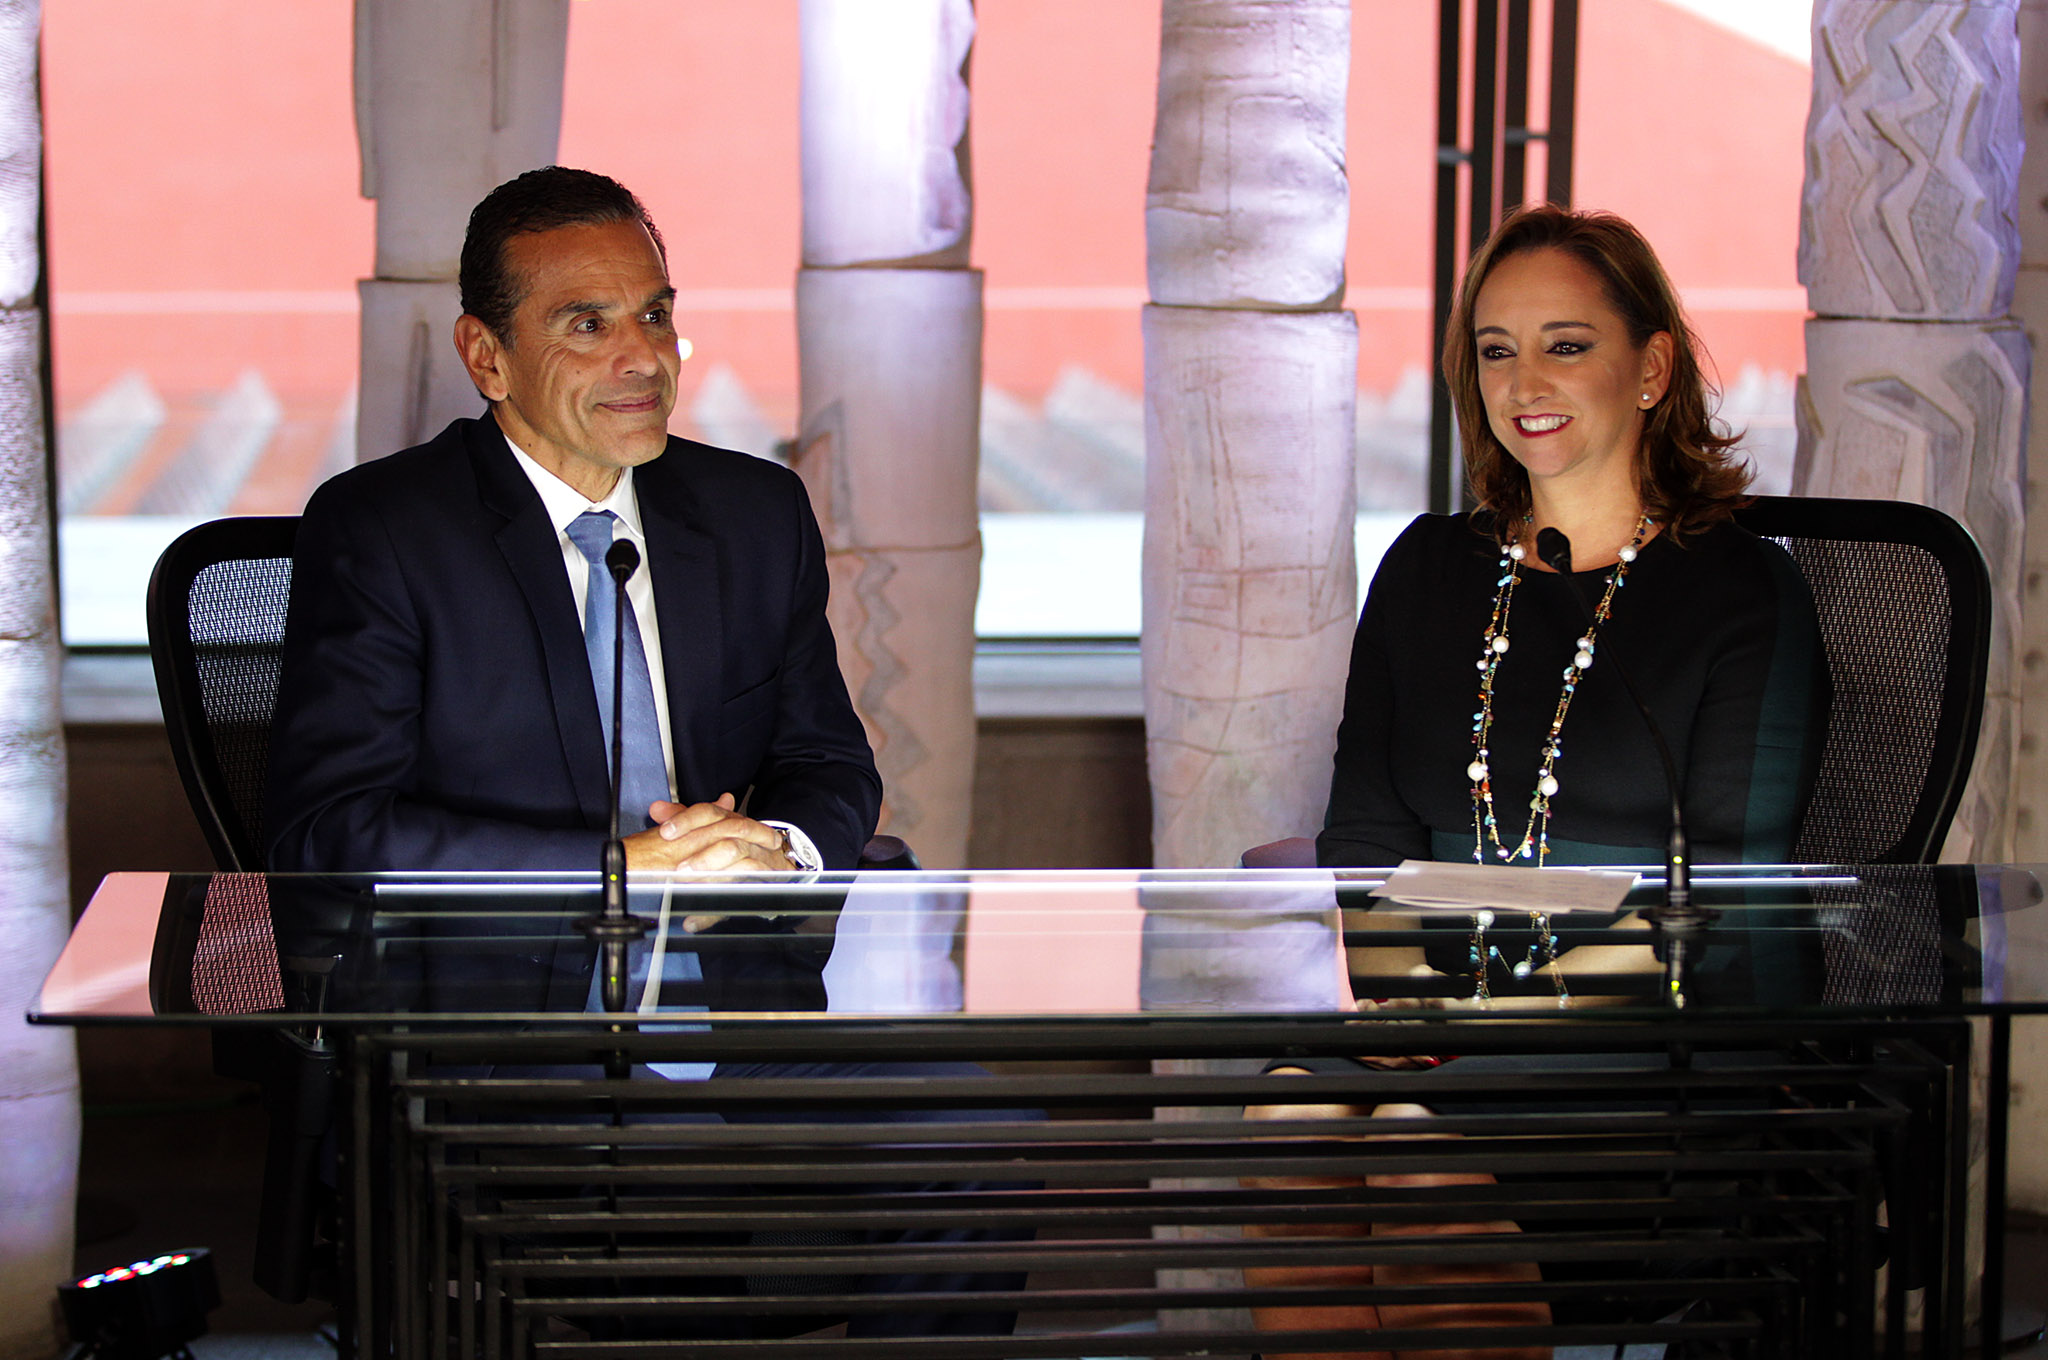 FOTO 3 La Canciller Claudia Ruiz Massieu entrevist  a Antonio Villaraigosa  exalcalde de Los  ngeles  para SRE Televisi n.jpg